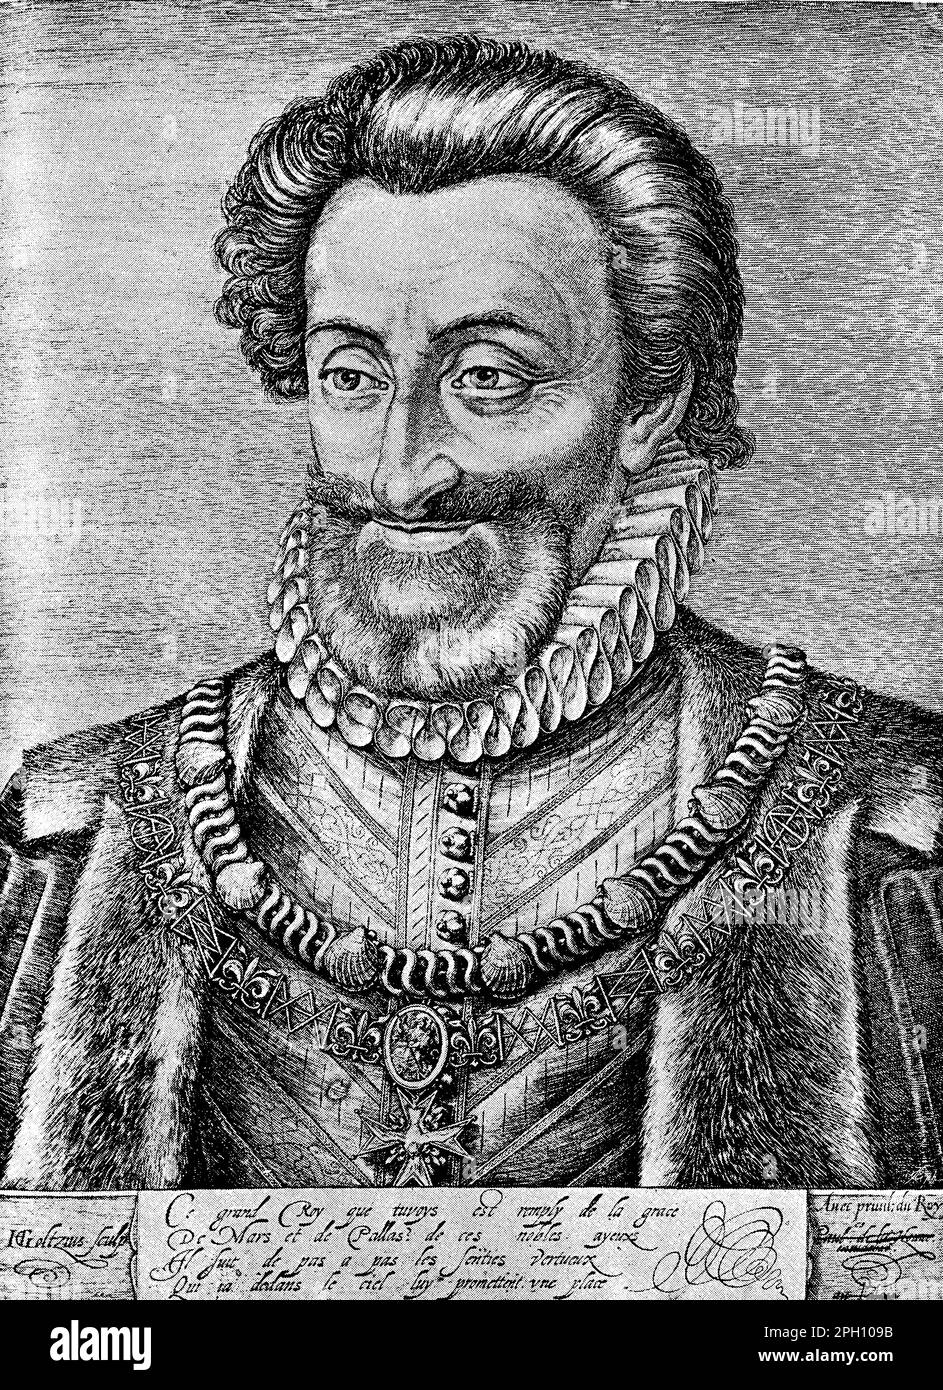 Heinrich IV. (1553-1610) war von 1589 bis zu seiner Ermordung im Jahr 1610 König von Frankreich. Er war ein geschickter Militärbefehlshaber und ein beliebter Monarch, bekannt für seine Bemühungen, die kriegführenden Fraktionen Frankreichs nach den Religionskriegen zu versöhnen. Er gab den Erlass von Nantes ab und gewährte französischen Protestanten religiöse Toleranz. Henry leitete auch ein bedeutendes wirtschaftliches und kulturelles Wachstum und legte damit die Grundlage für den französischen Absolutistenstaat. Stockfoto